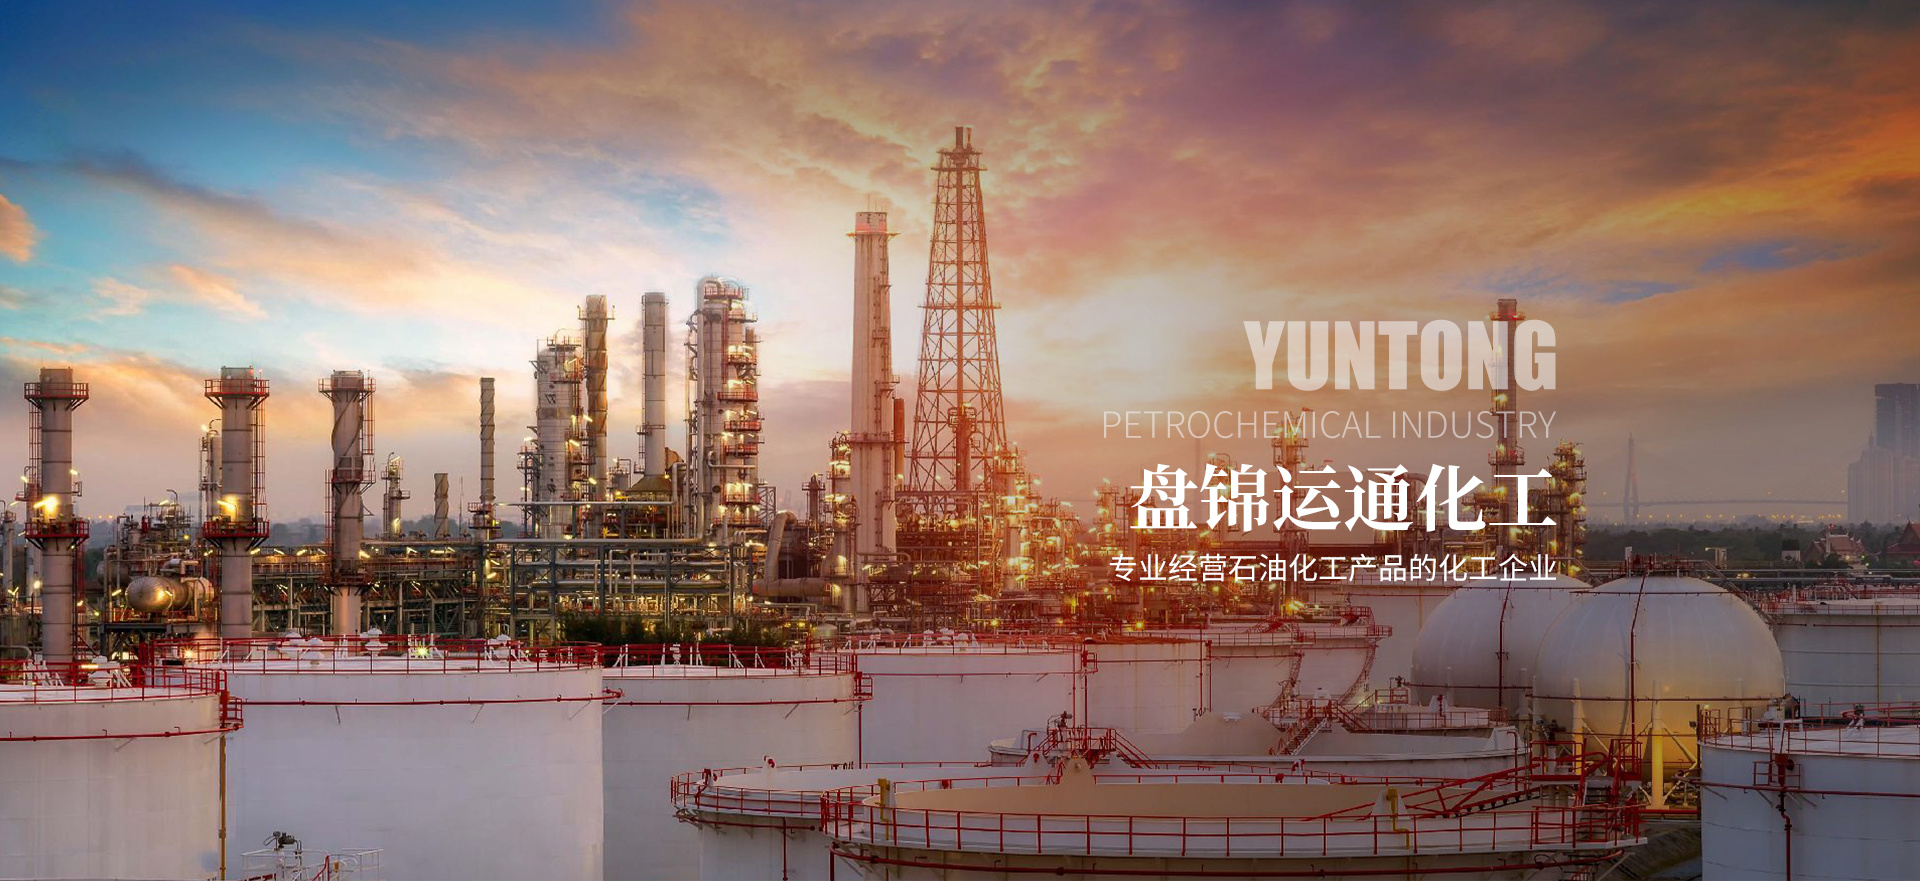 天游web原生态手机端有限公司是一家专业经营石油化工产品的化工企业。本公司主要经营有燃料油、柴油、甲苯等化工产品。